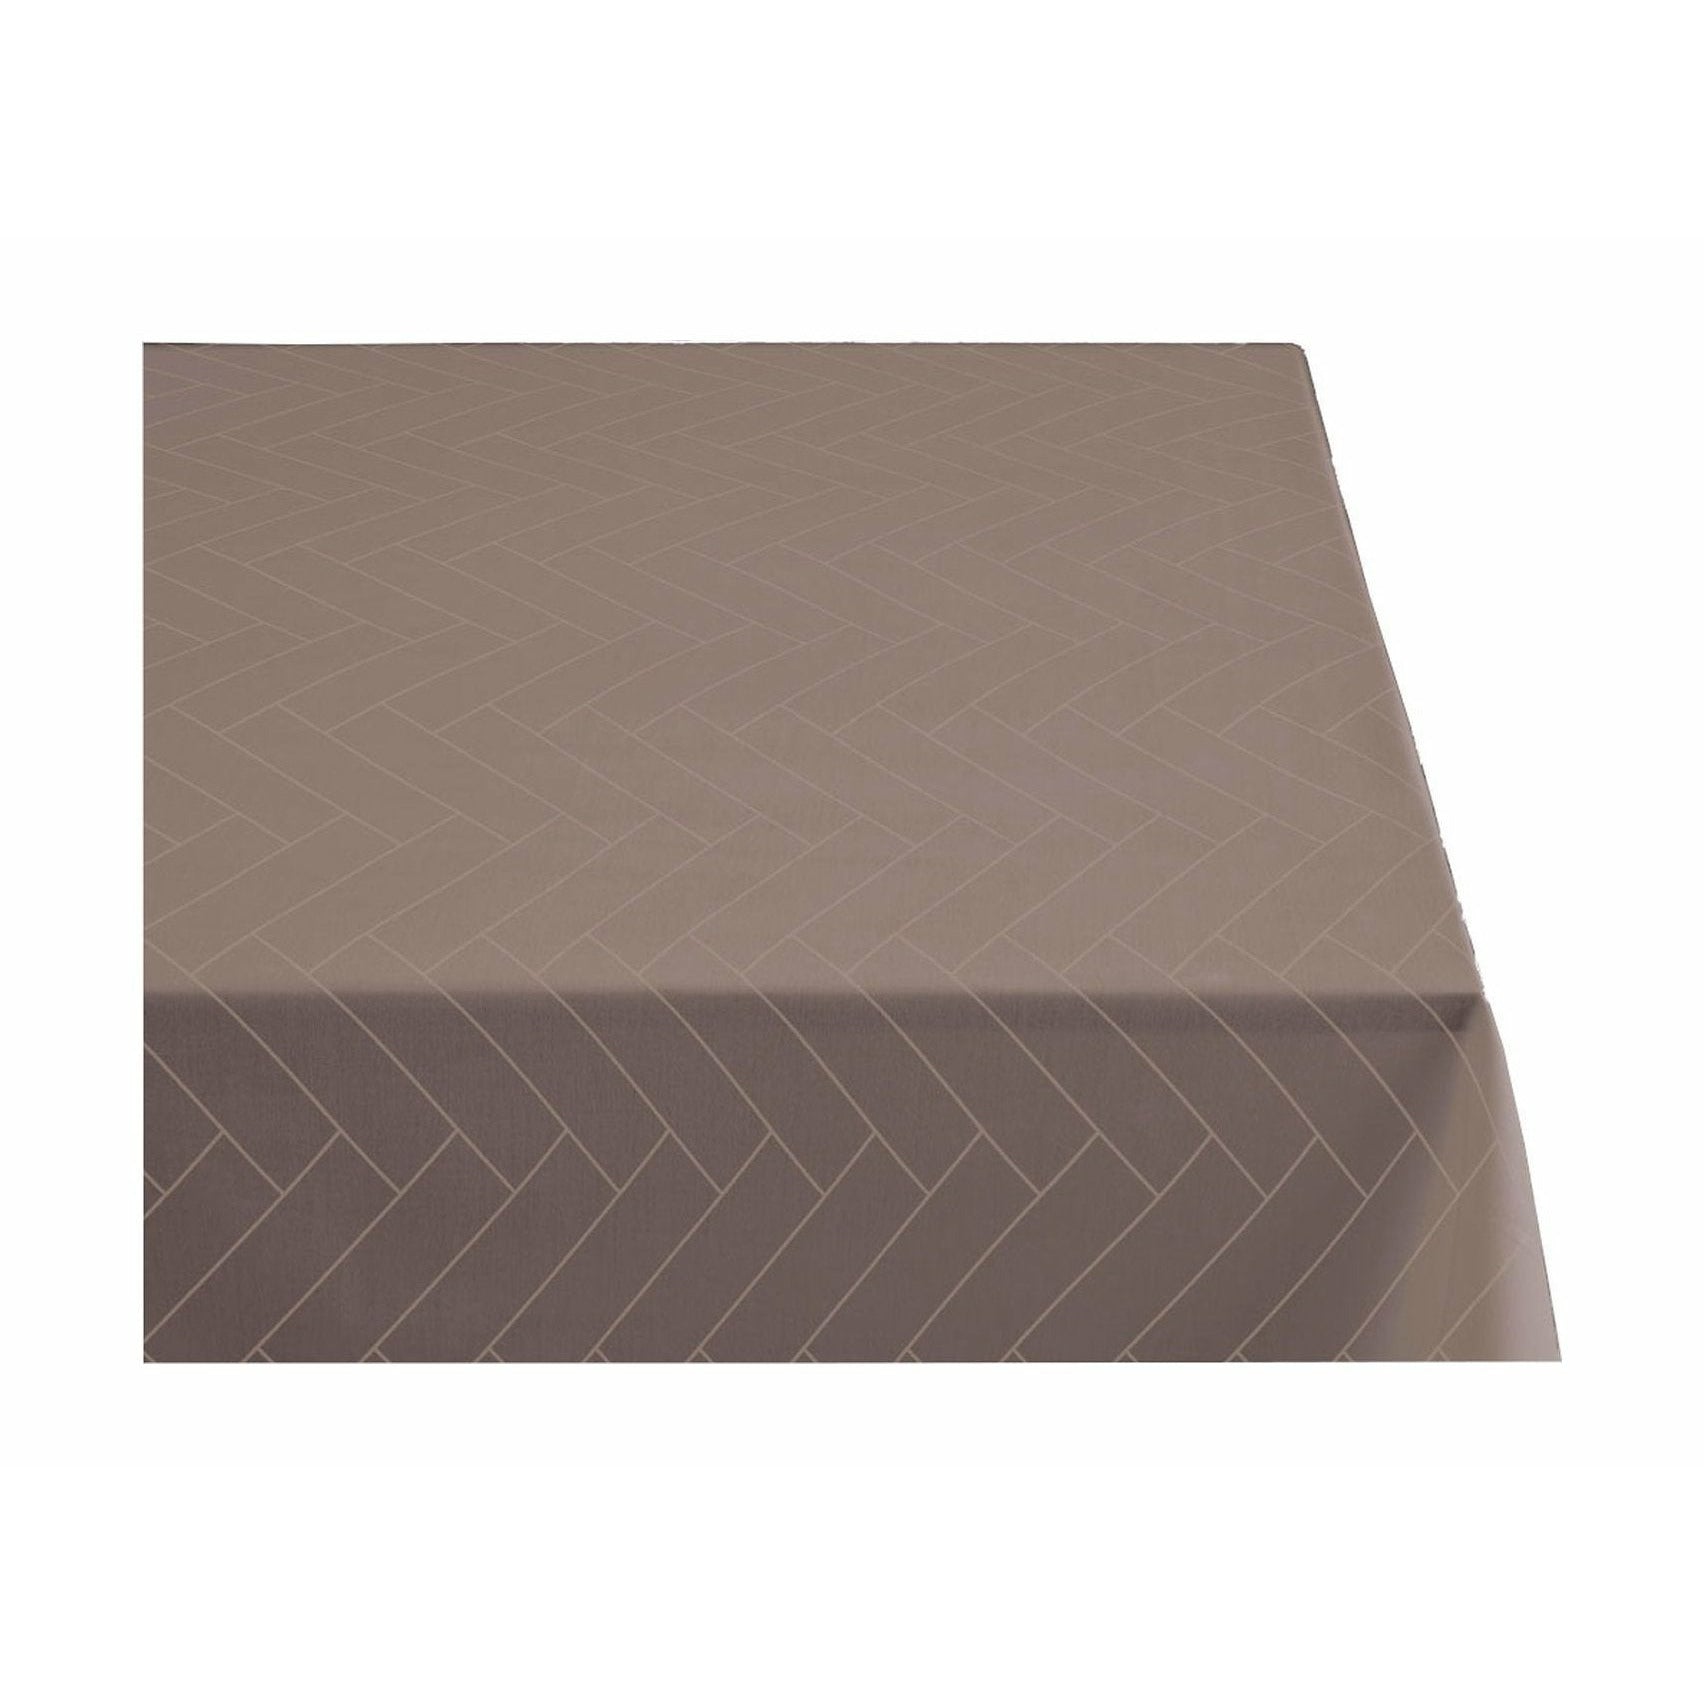 södahl瓷砖damask桌布140x220厘米，灰褐色